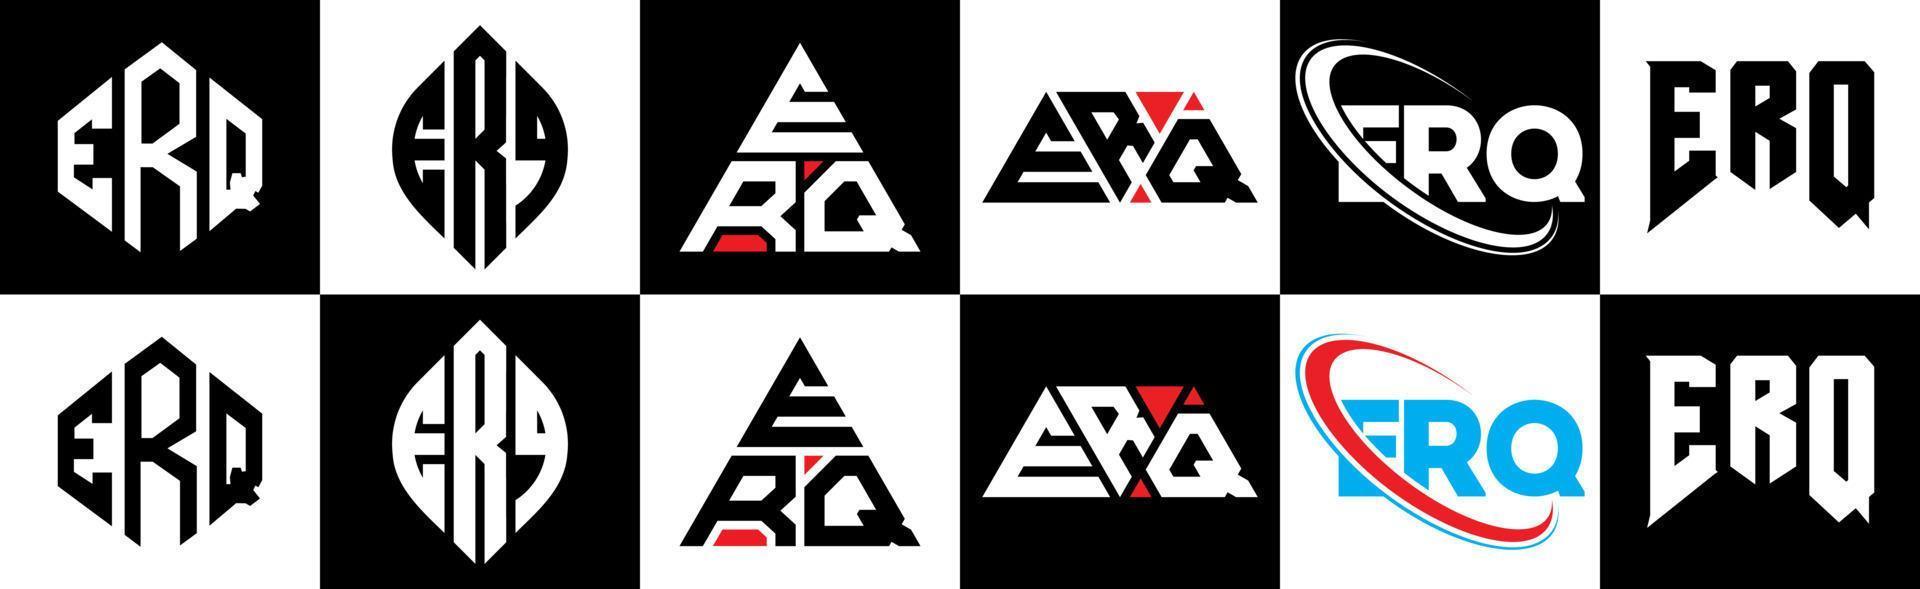 création de logo de lettre erq en six styles. polygone erq, cercle, triangle, hexagone, style plat et simple avec logo de lettre de variation de couleur noir et blanc dans un plan de travail. logo erq minimaliste et classique vecteur